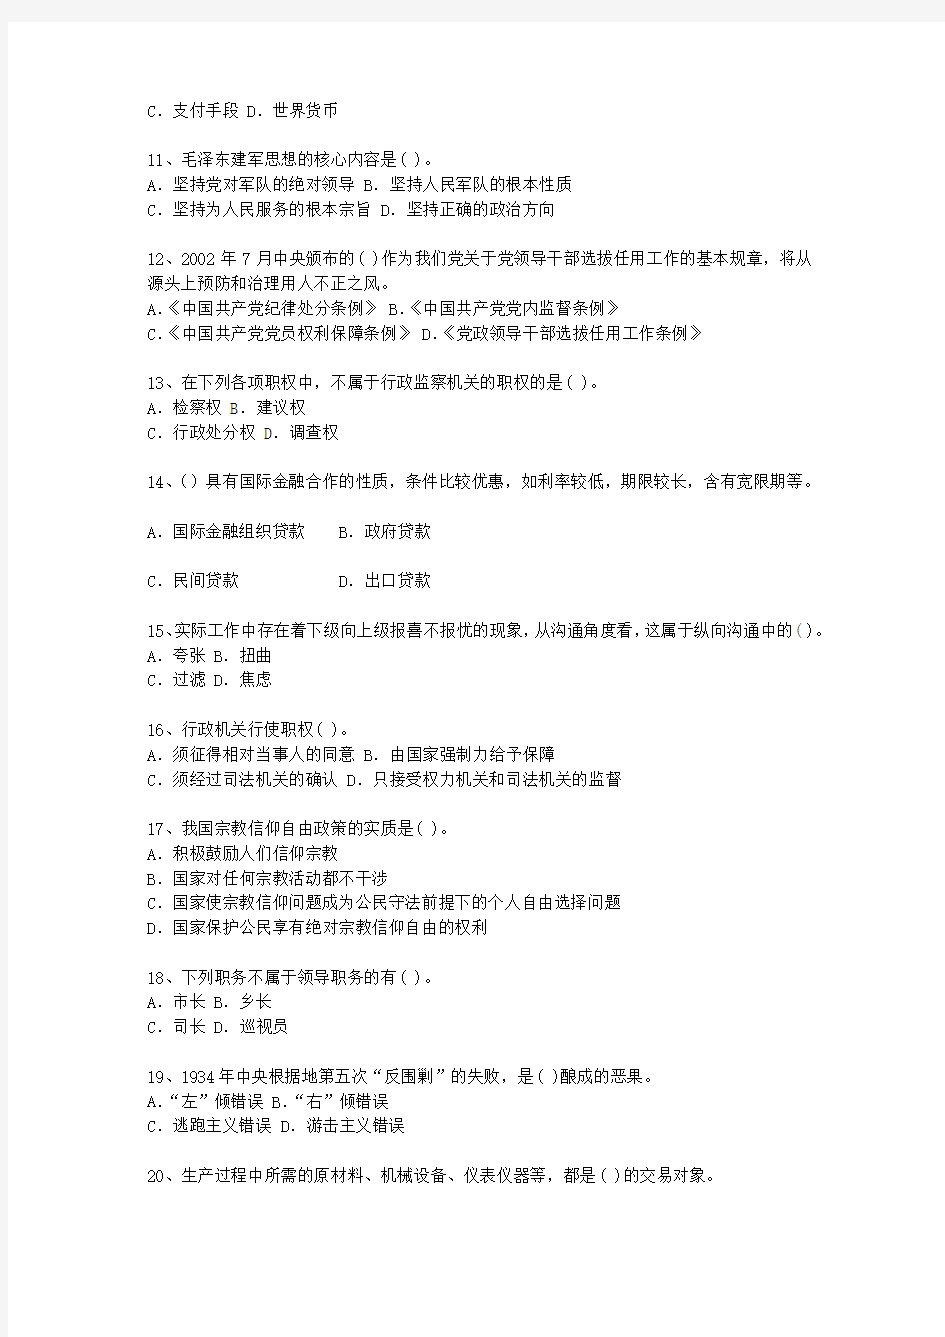 2012江苏省公选(公开选拔)领导干部考试技巧、答题原则